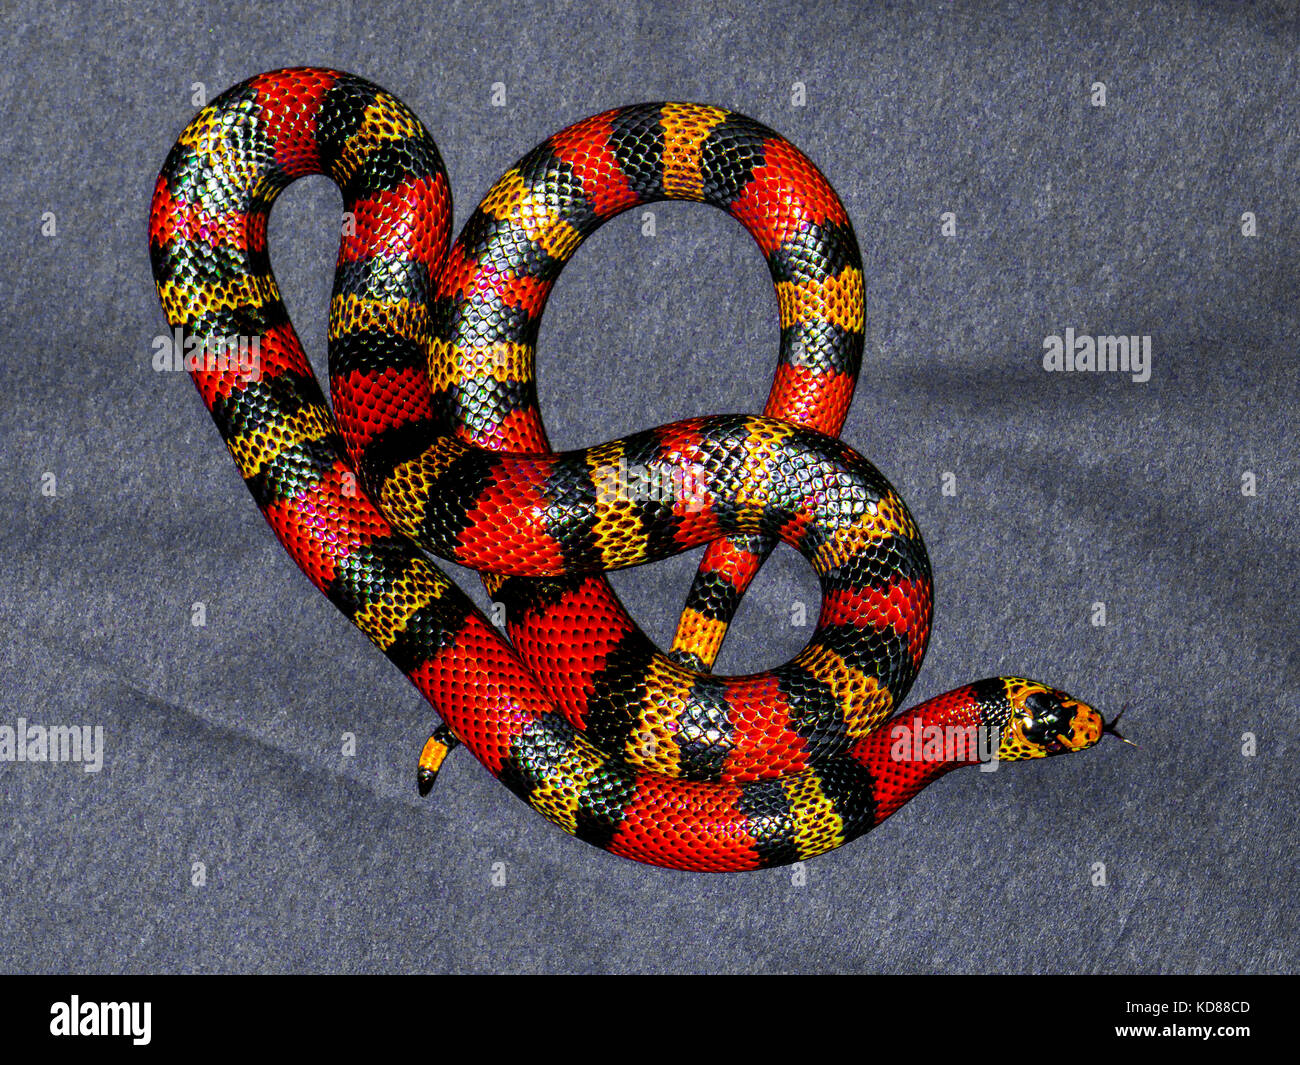 Rot und gelb gestreifte Schlange auf grauem Hintergrund Stockfotografie -  Alamy